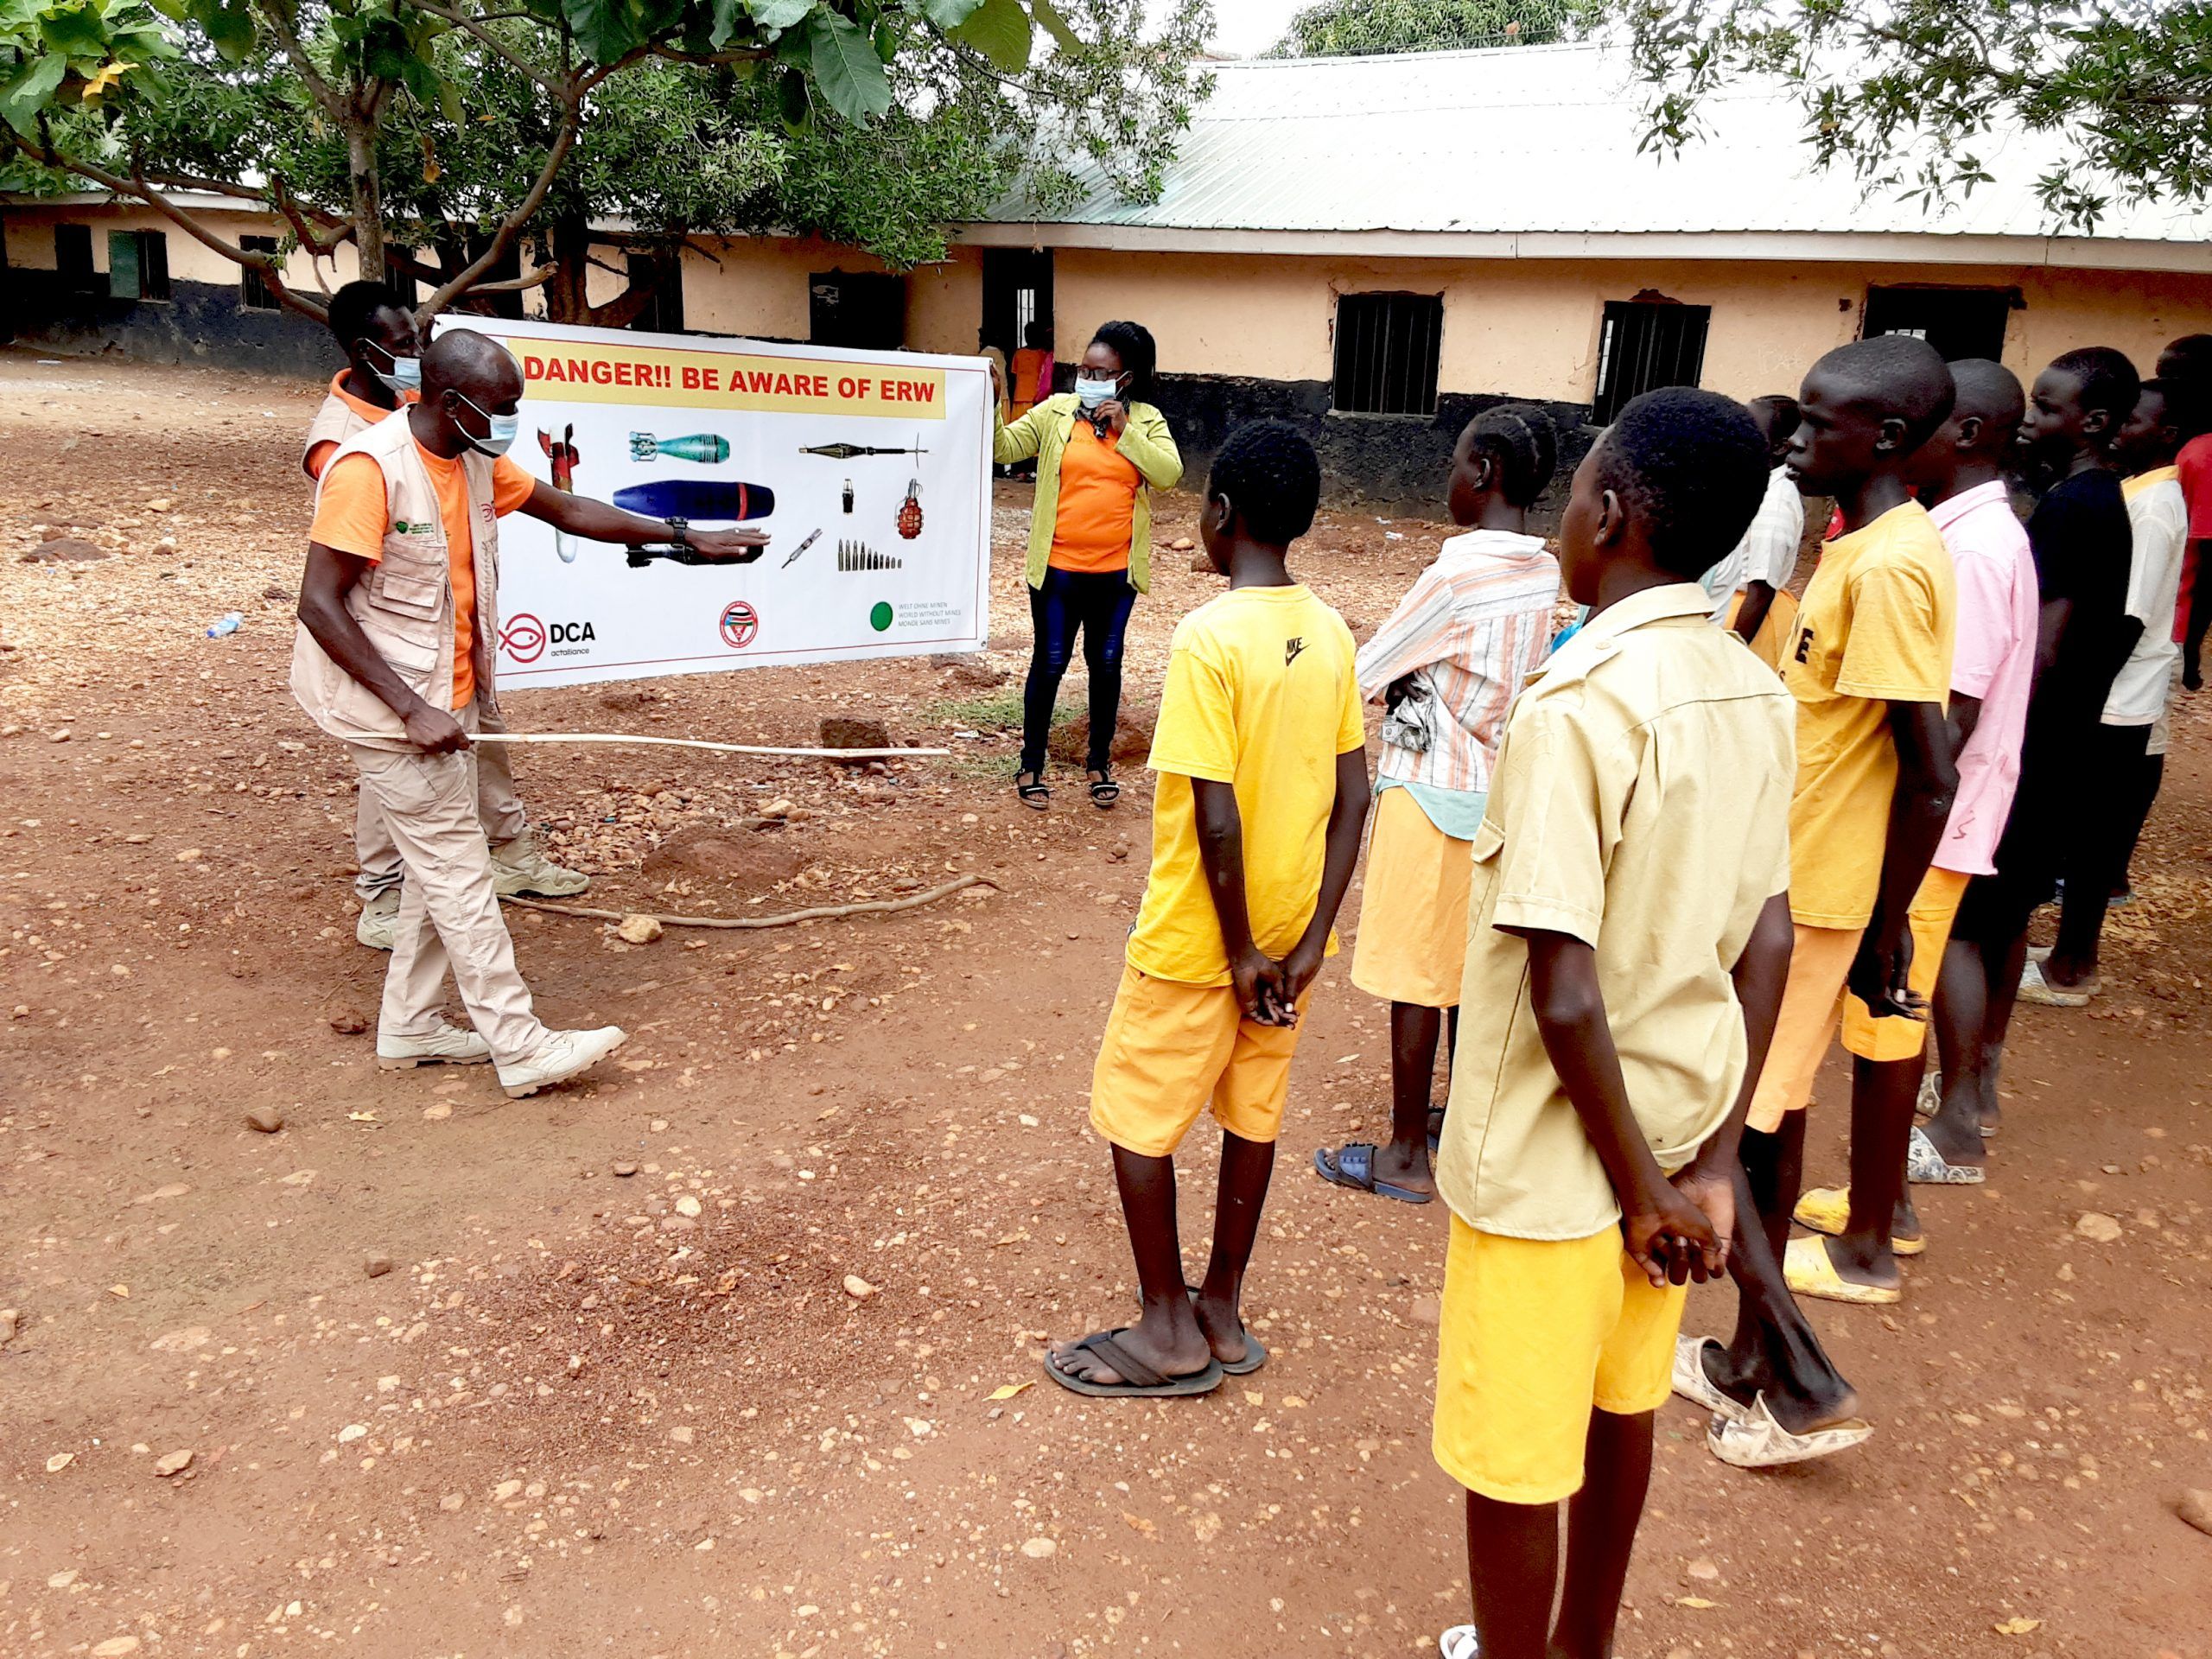 Raising awareness of ERWs at a school in South Sudan